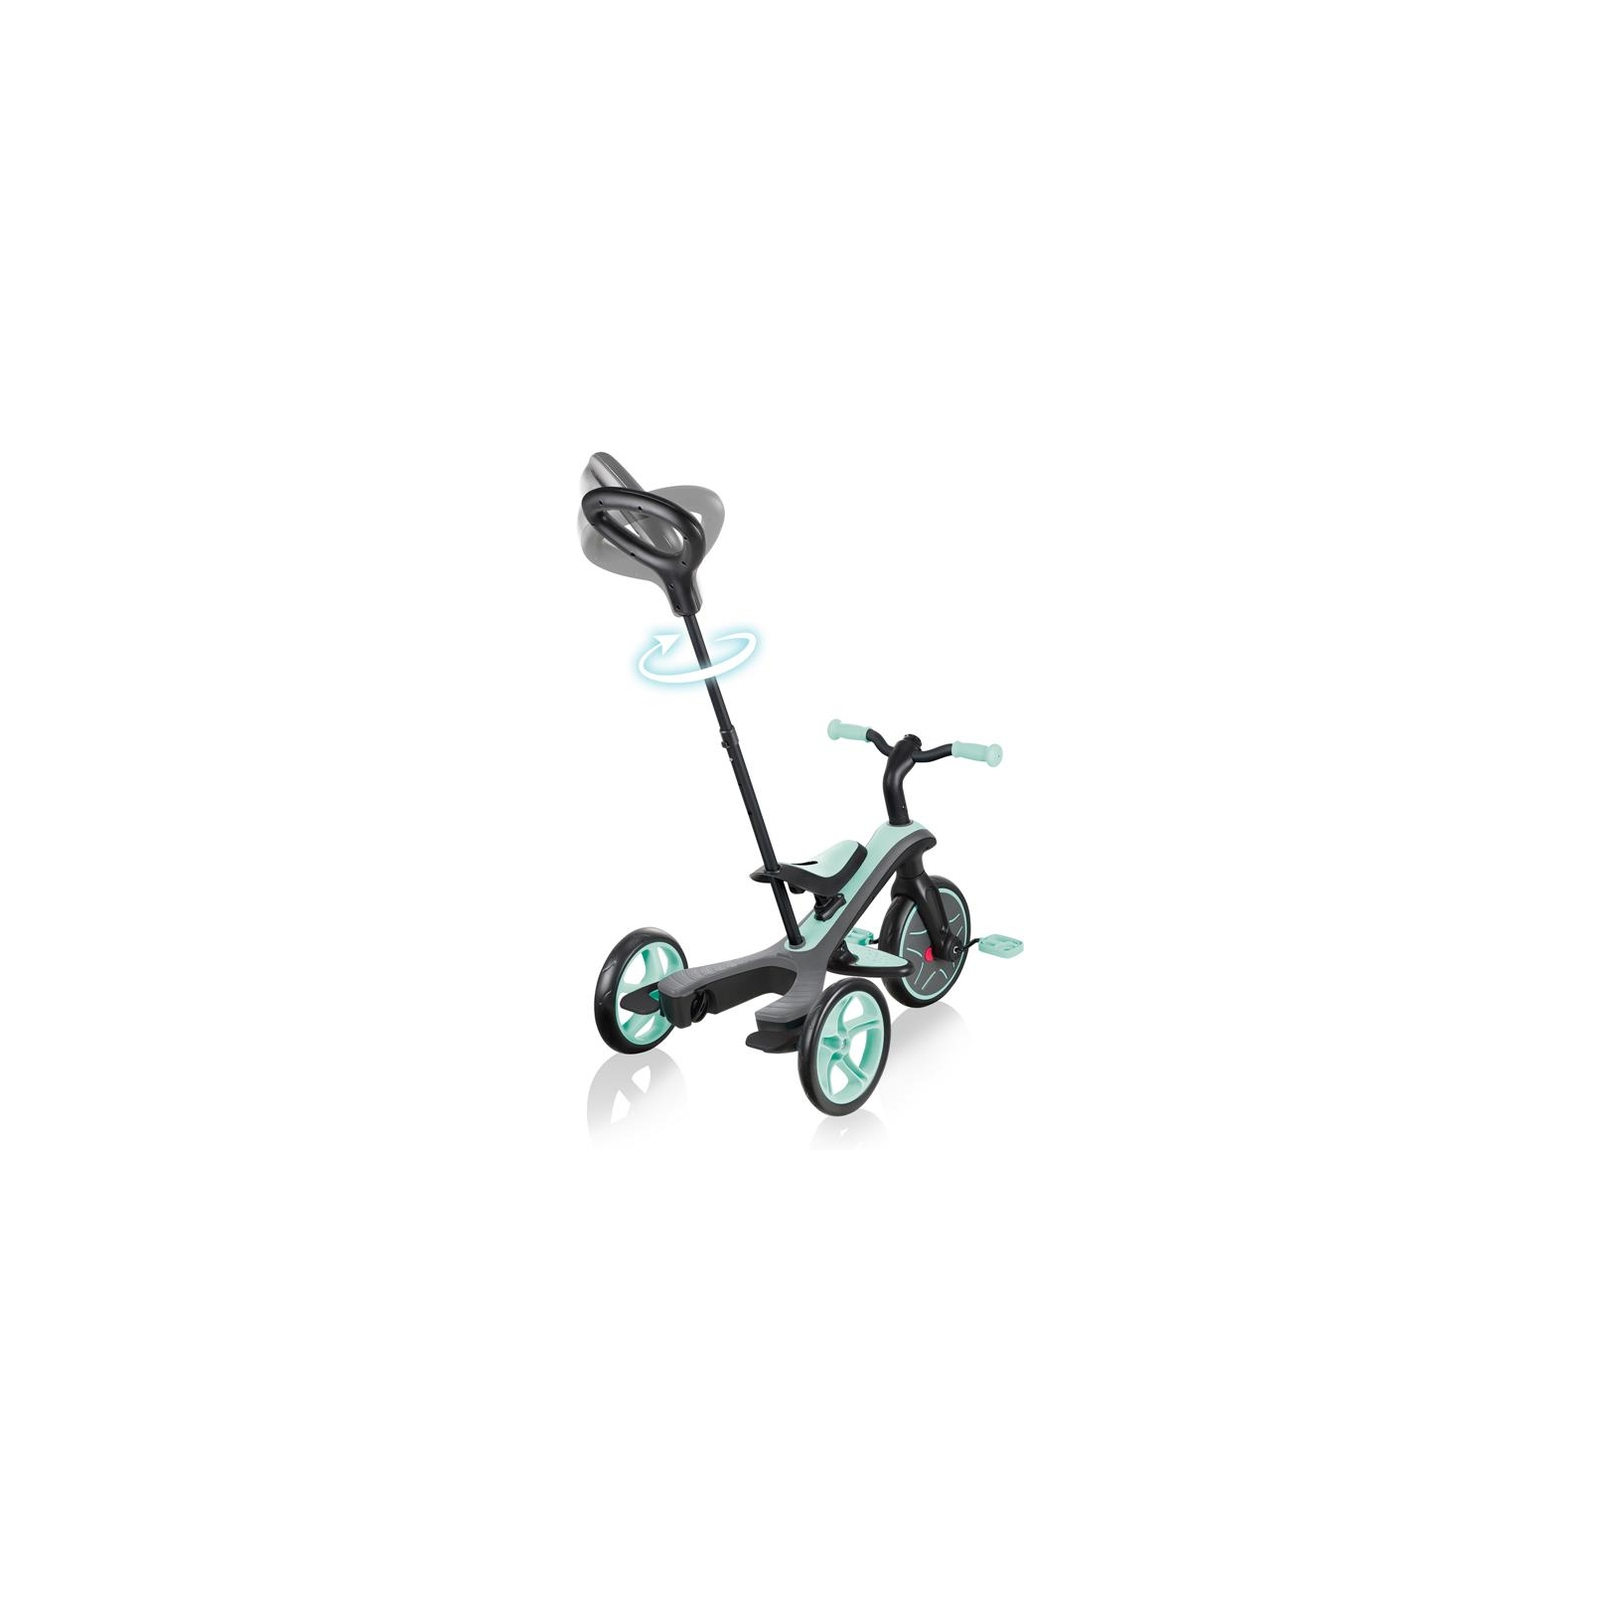 Детский велосипед Globber 4 в 1 Explorer Trike Teal Turquoise (632-105-3) изображение 3